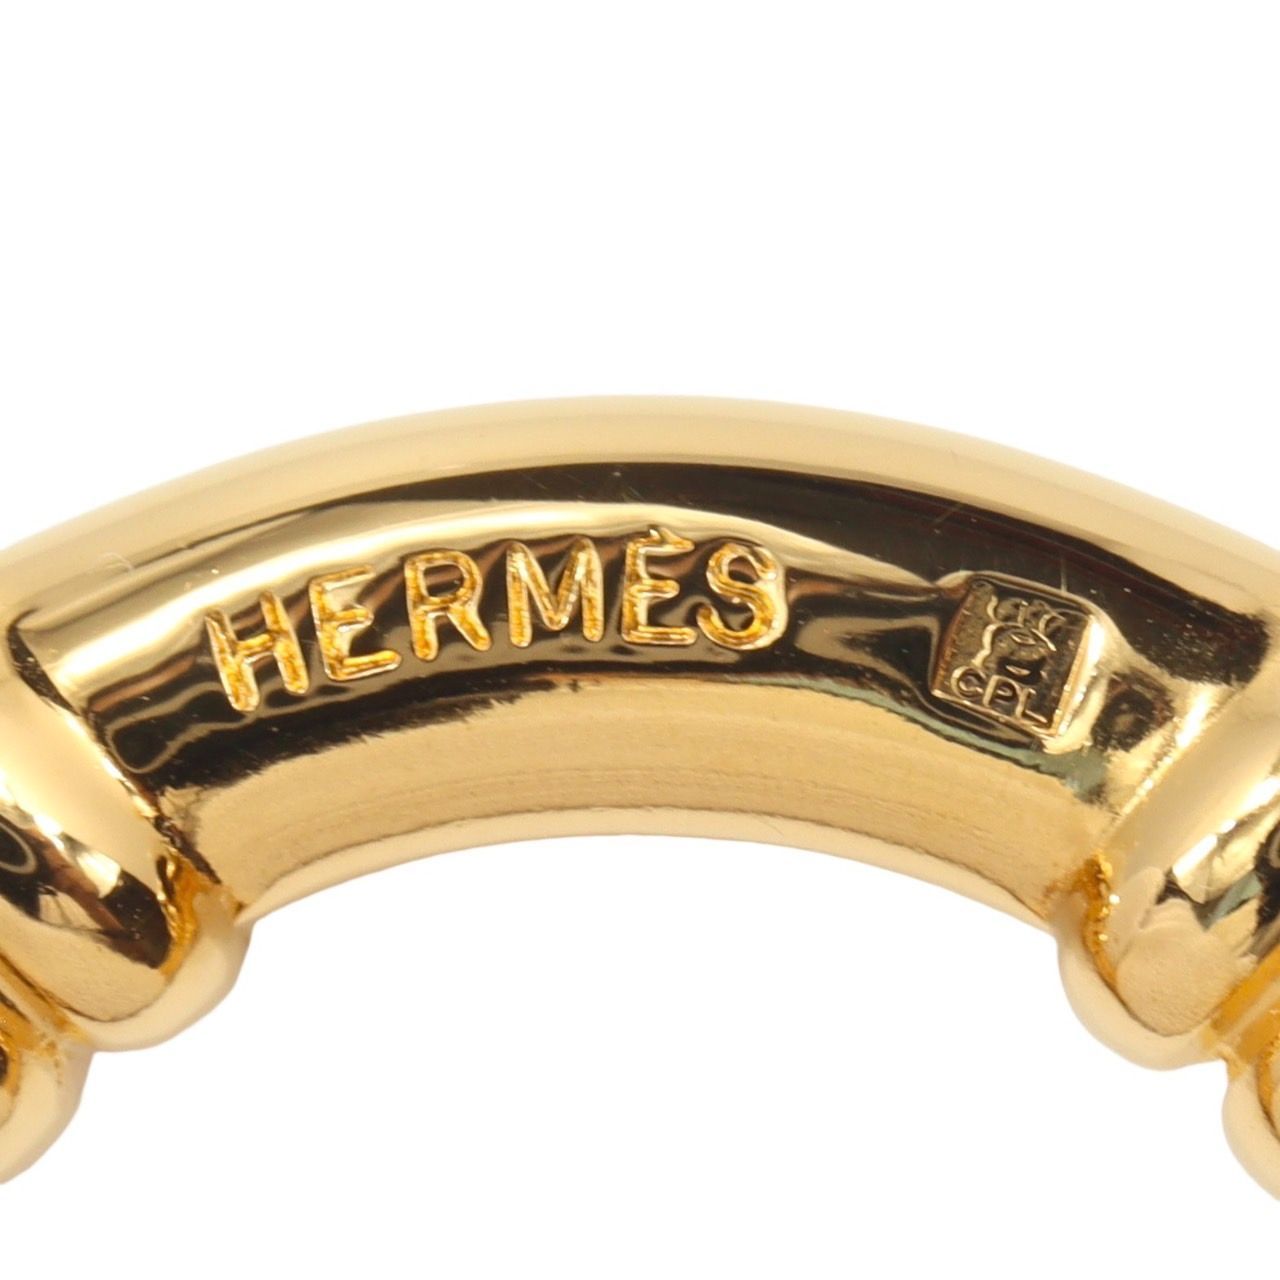 HERMES エルメス ブーエ スカーフリング スカーフ留め 金メッキ GP ゴールド ブランド小物 服飾小物